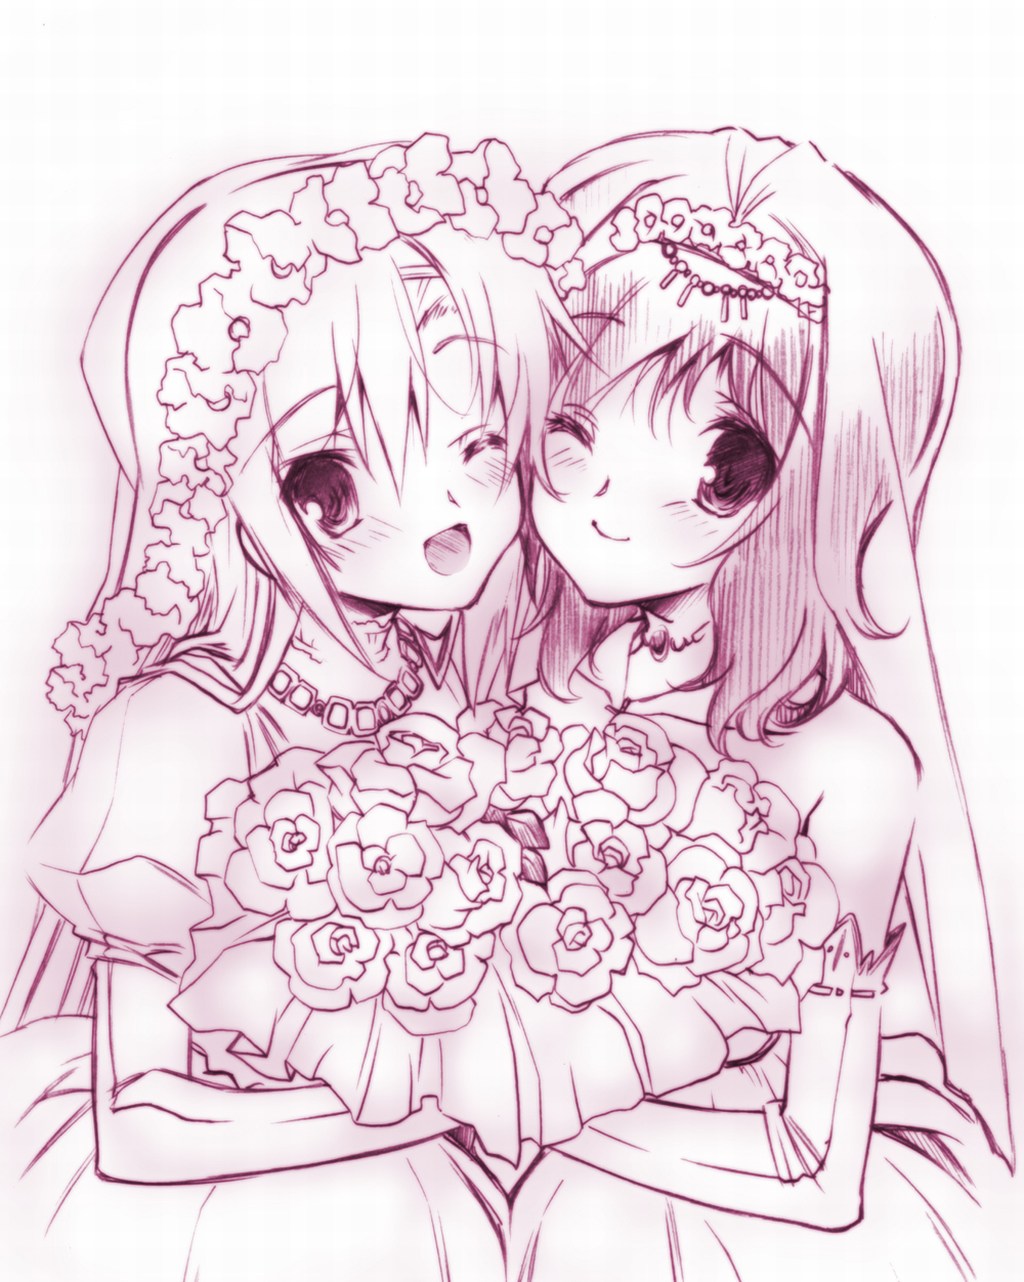 черно белая картинка две аниме девушки в свадебном платье с цветами из аниме hayate no gotoku!